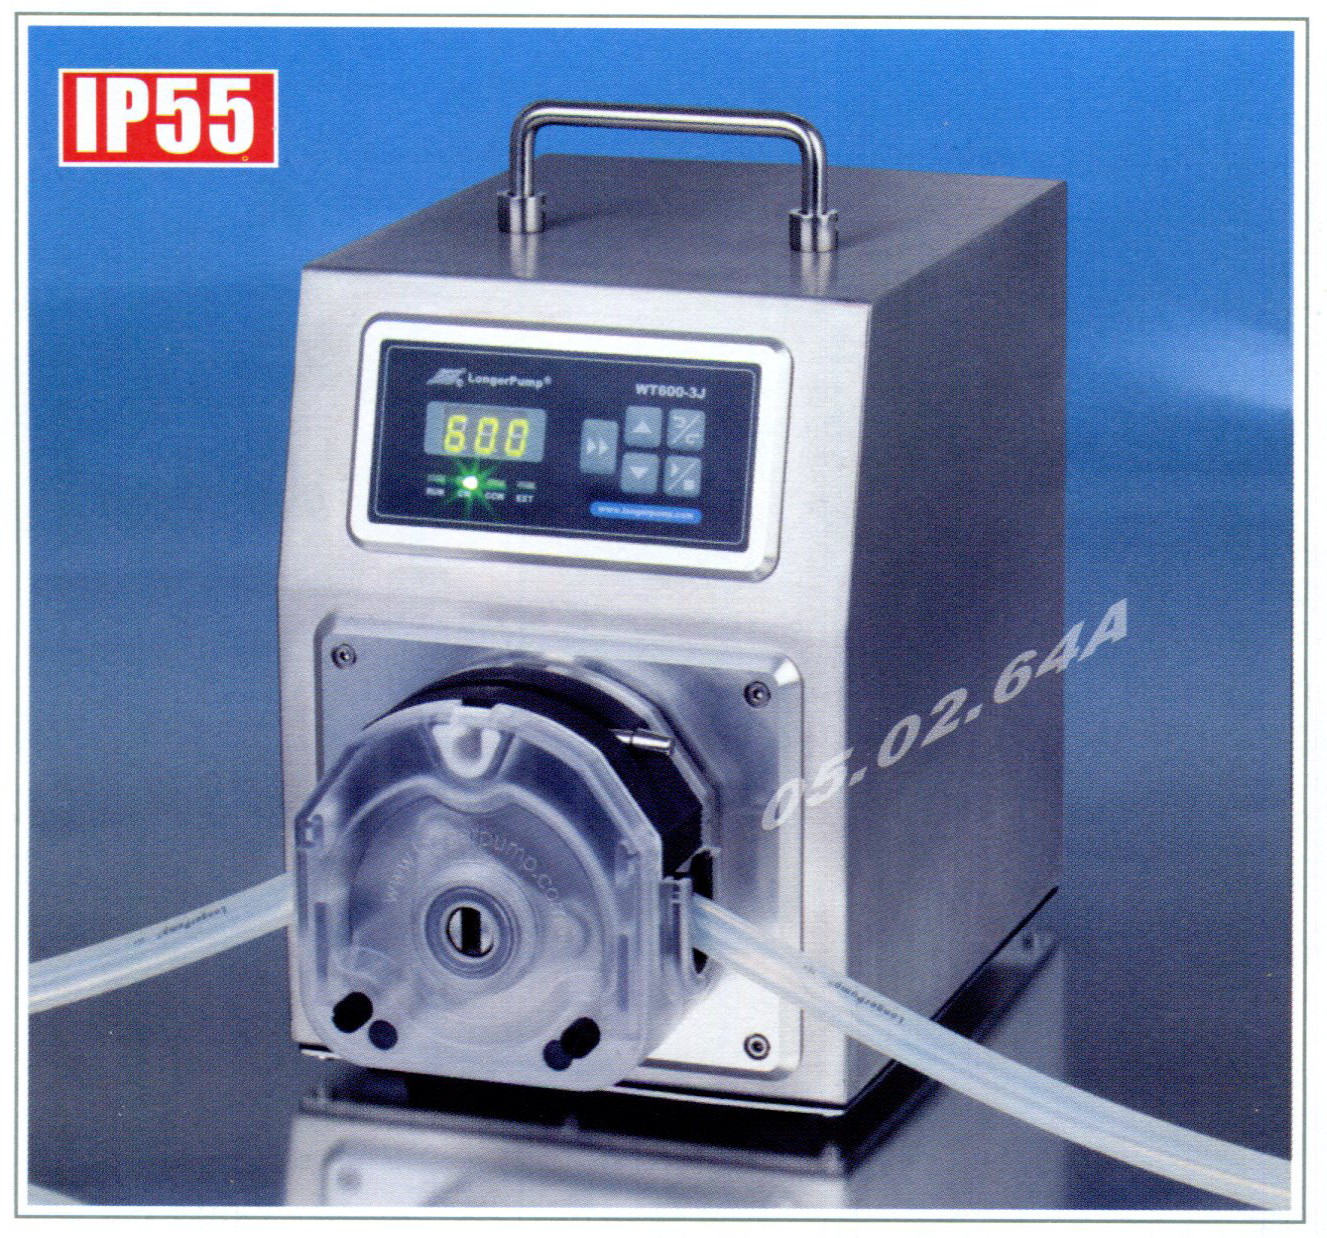 Longer pump, Peristaltic pump, WT600-3J